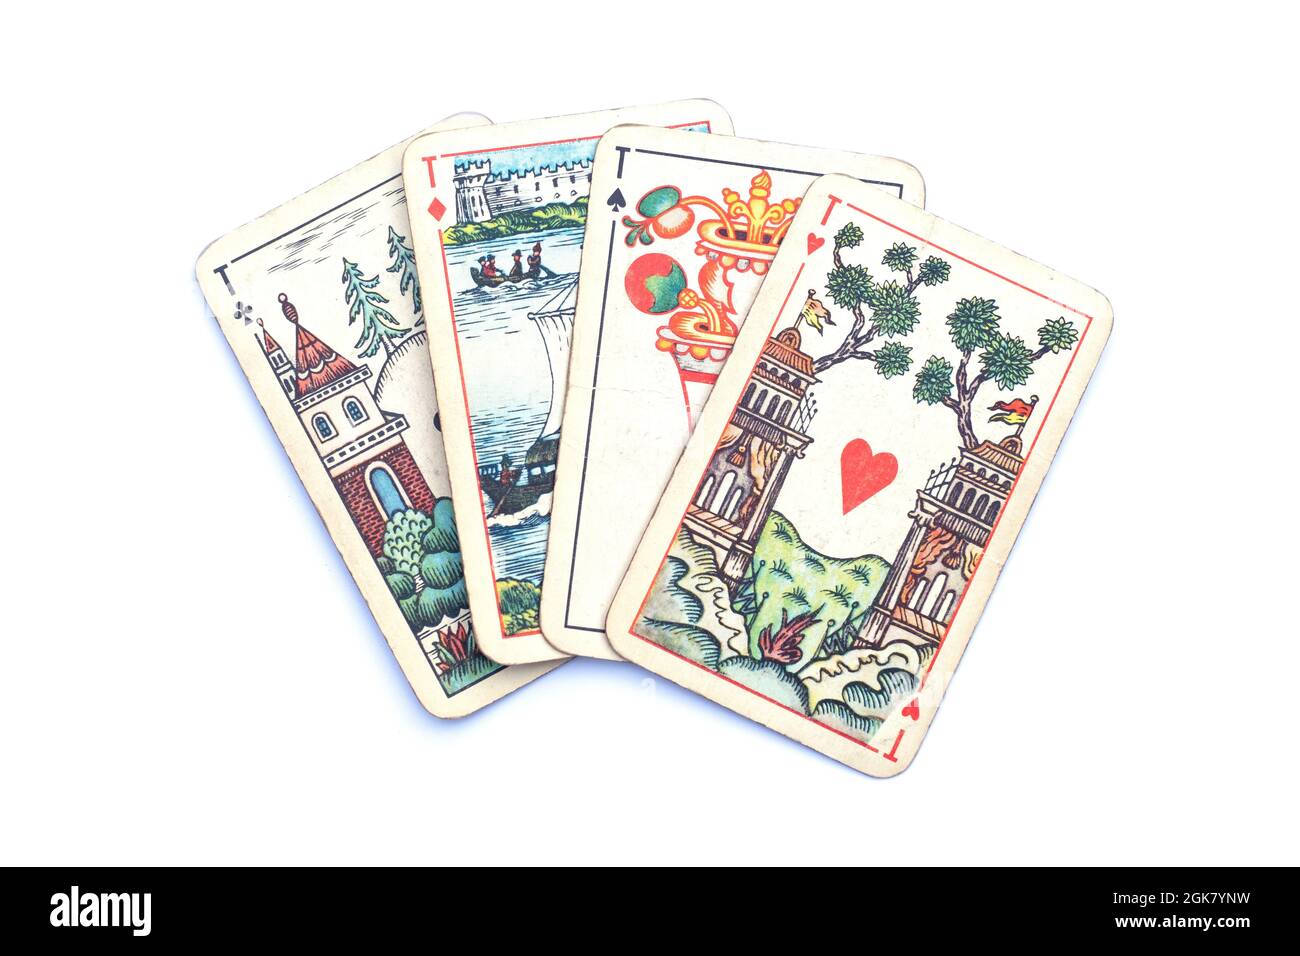 Conception légendaire de l'Union soviétique jouant des cartes qui étaient dans presque tous les foyers. Banque D'Images